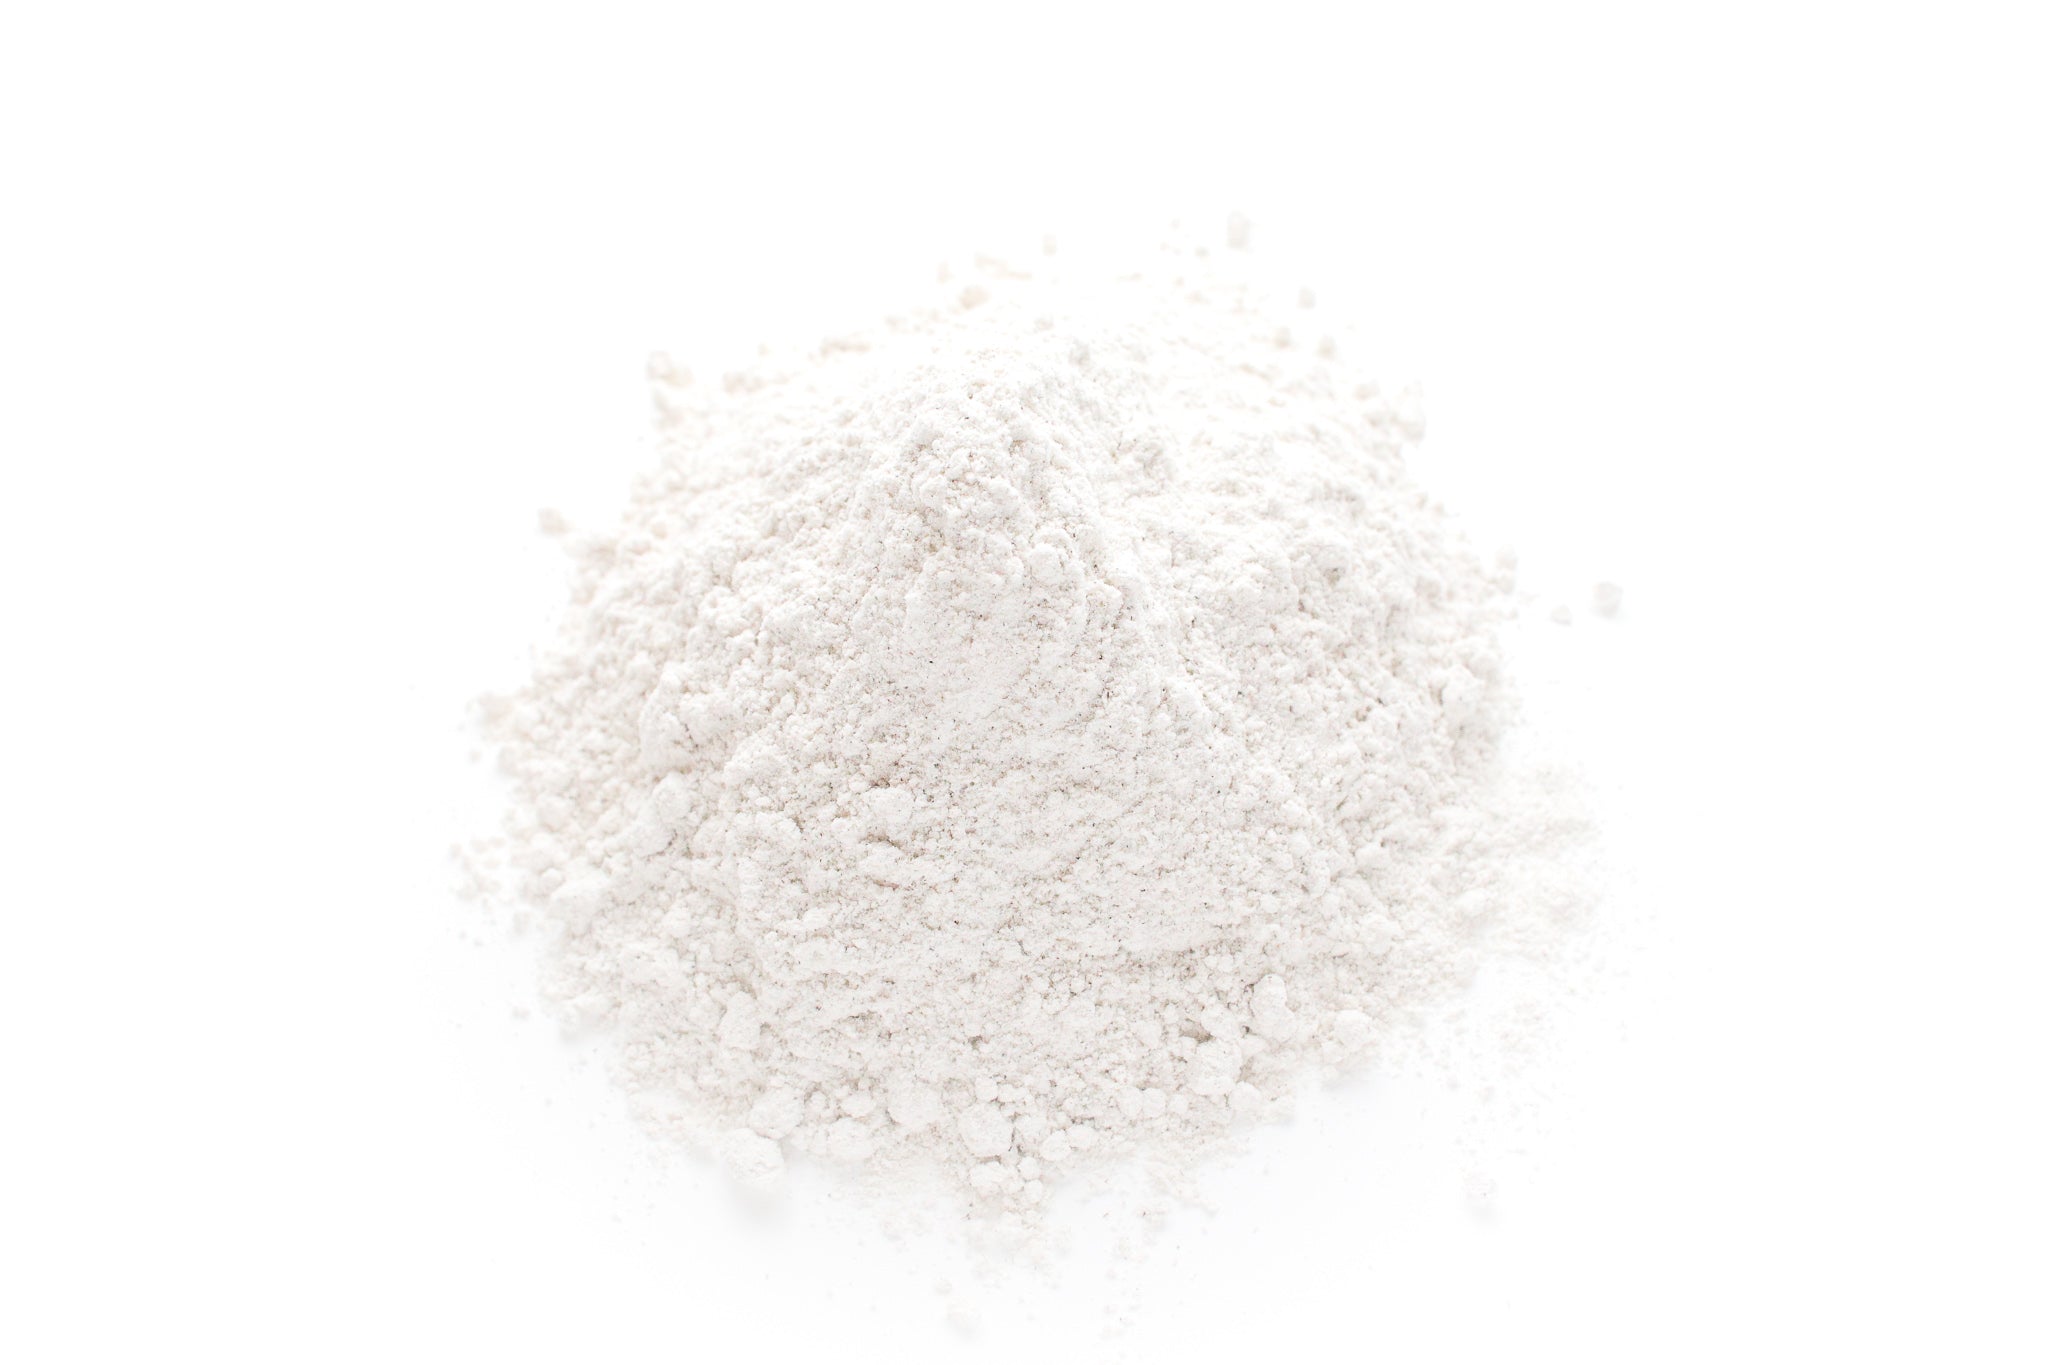 無農薬 石臼 そば粉 by はら農場 Hokkaido Whole Buckwheat (Soba) Flour